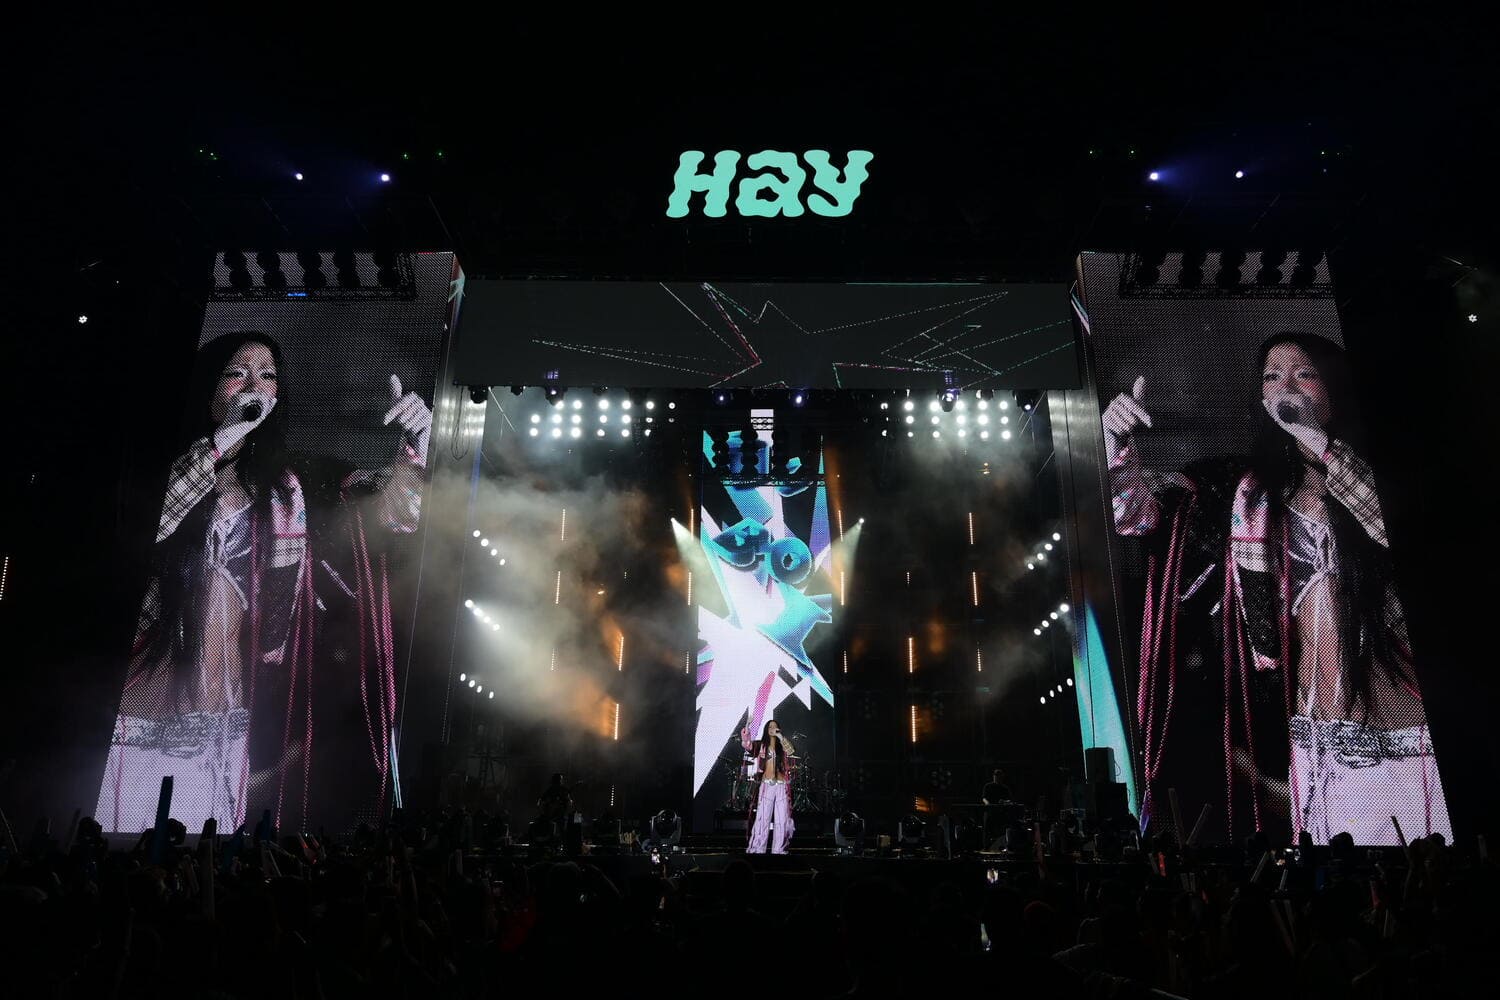 Suboi biểu diễn tại HAY FEST. Cô diễn gần cuối chương trình, sau sân khấu của nhóm Epik High. Ảnh: Ban tổ chức